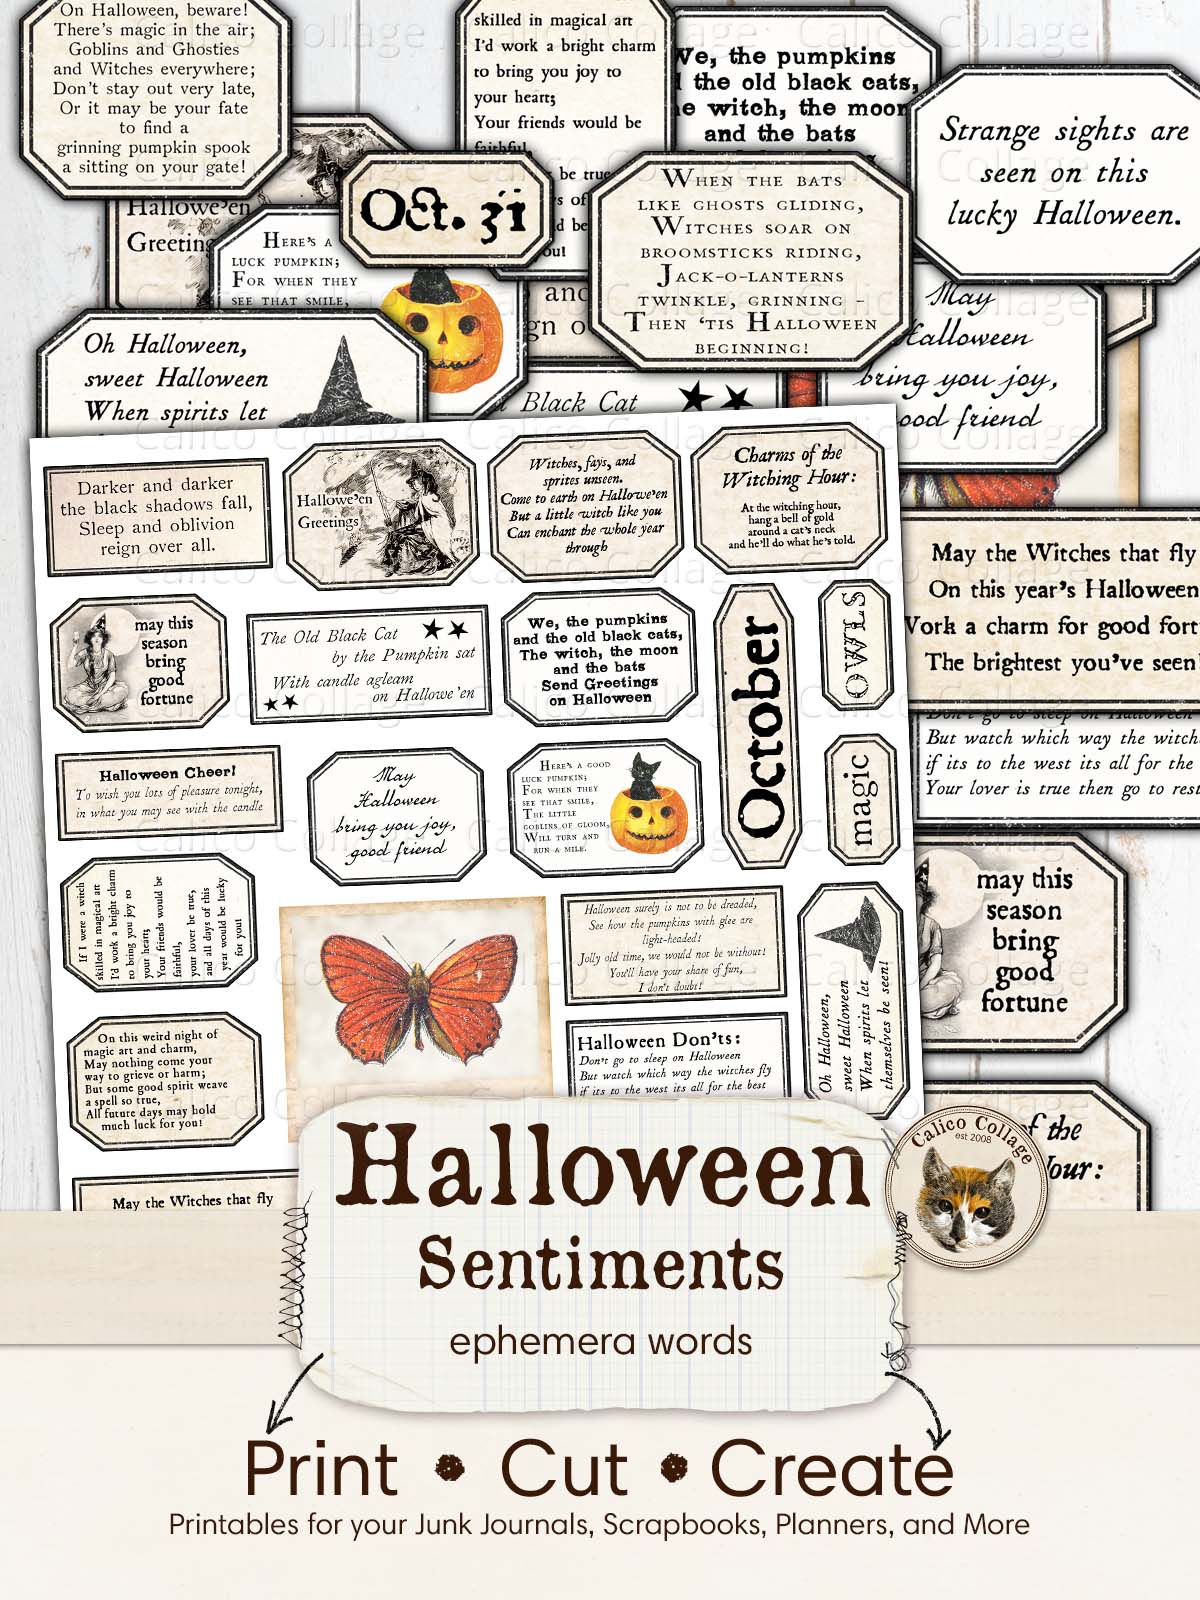 Halloween Sentiments, Halloween Ephemera for Junk Journals